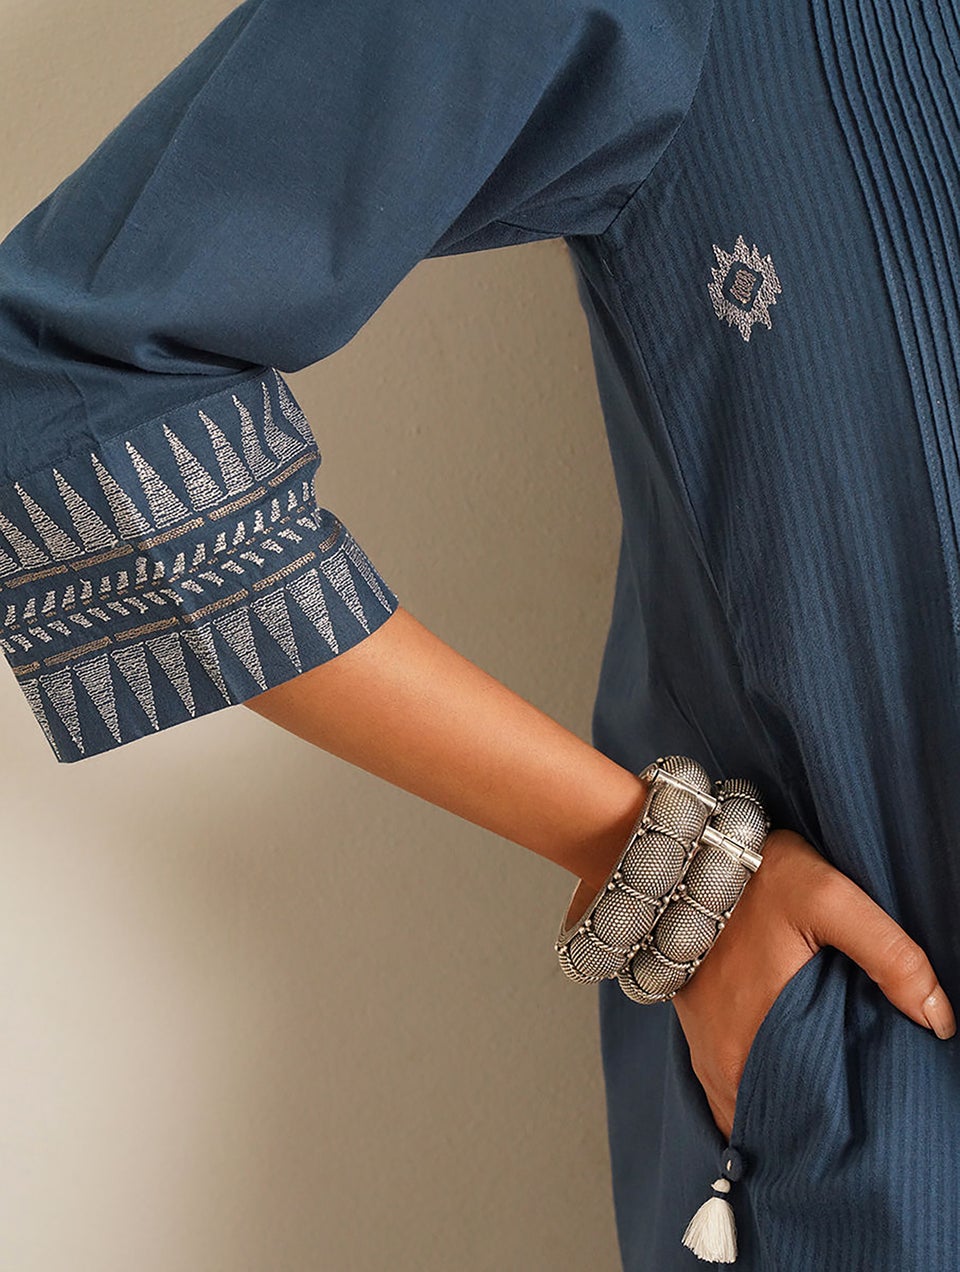 Women Blue Embroidered Cotton Kurta Dress - XS